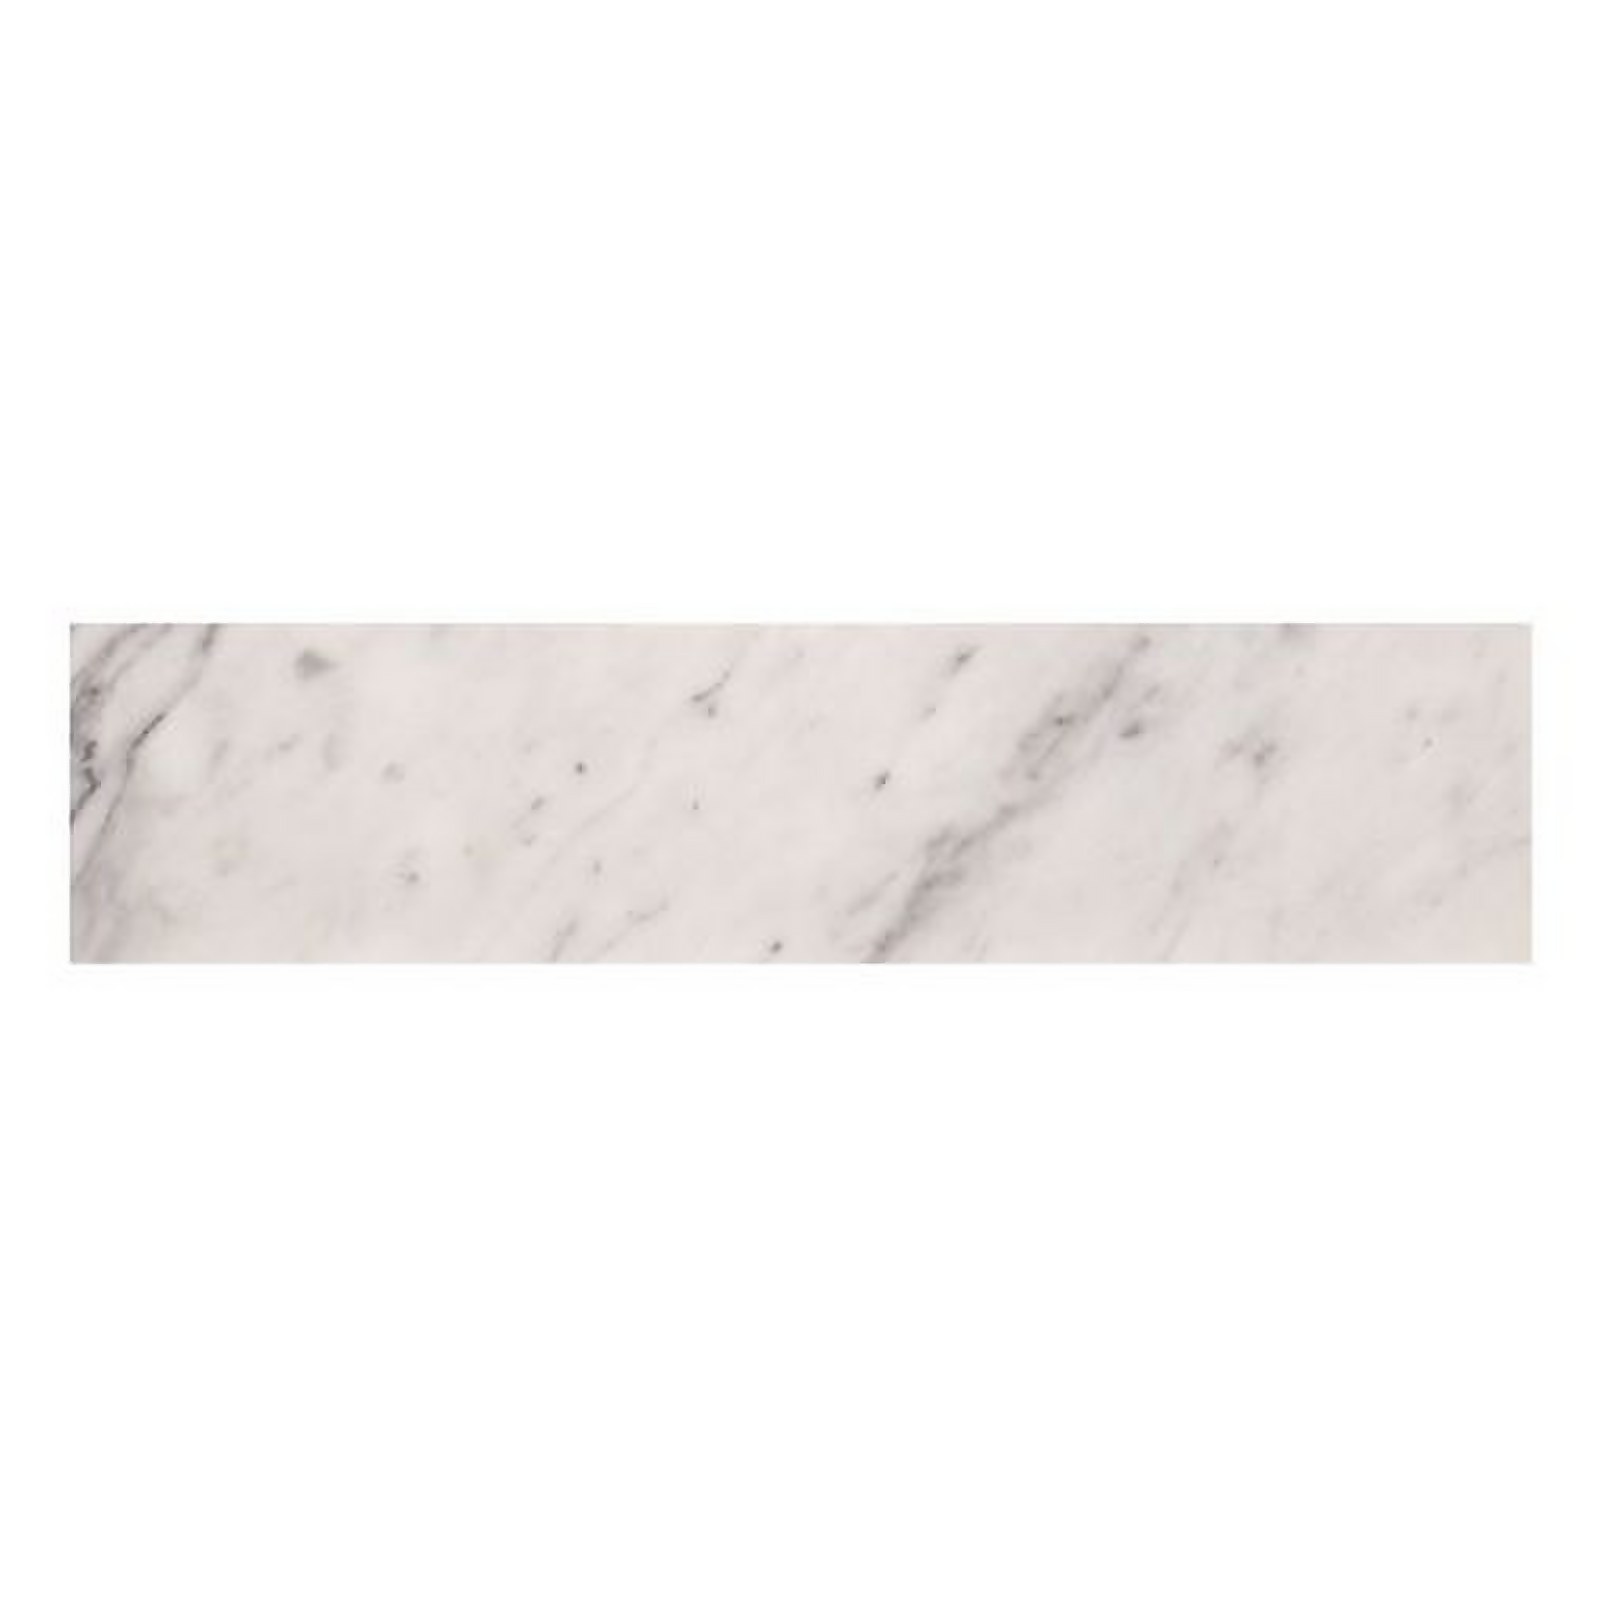 Photo of Bathstore Savoy Toilet Worktop - Carrara Marble